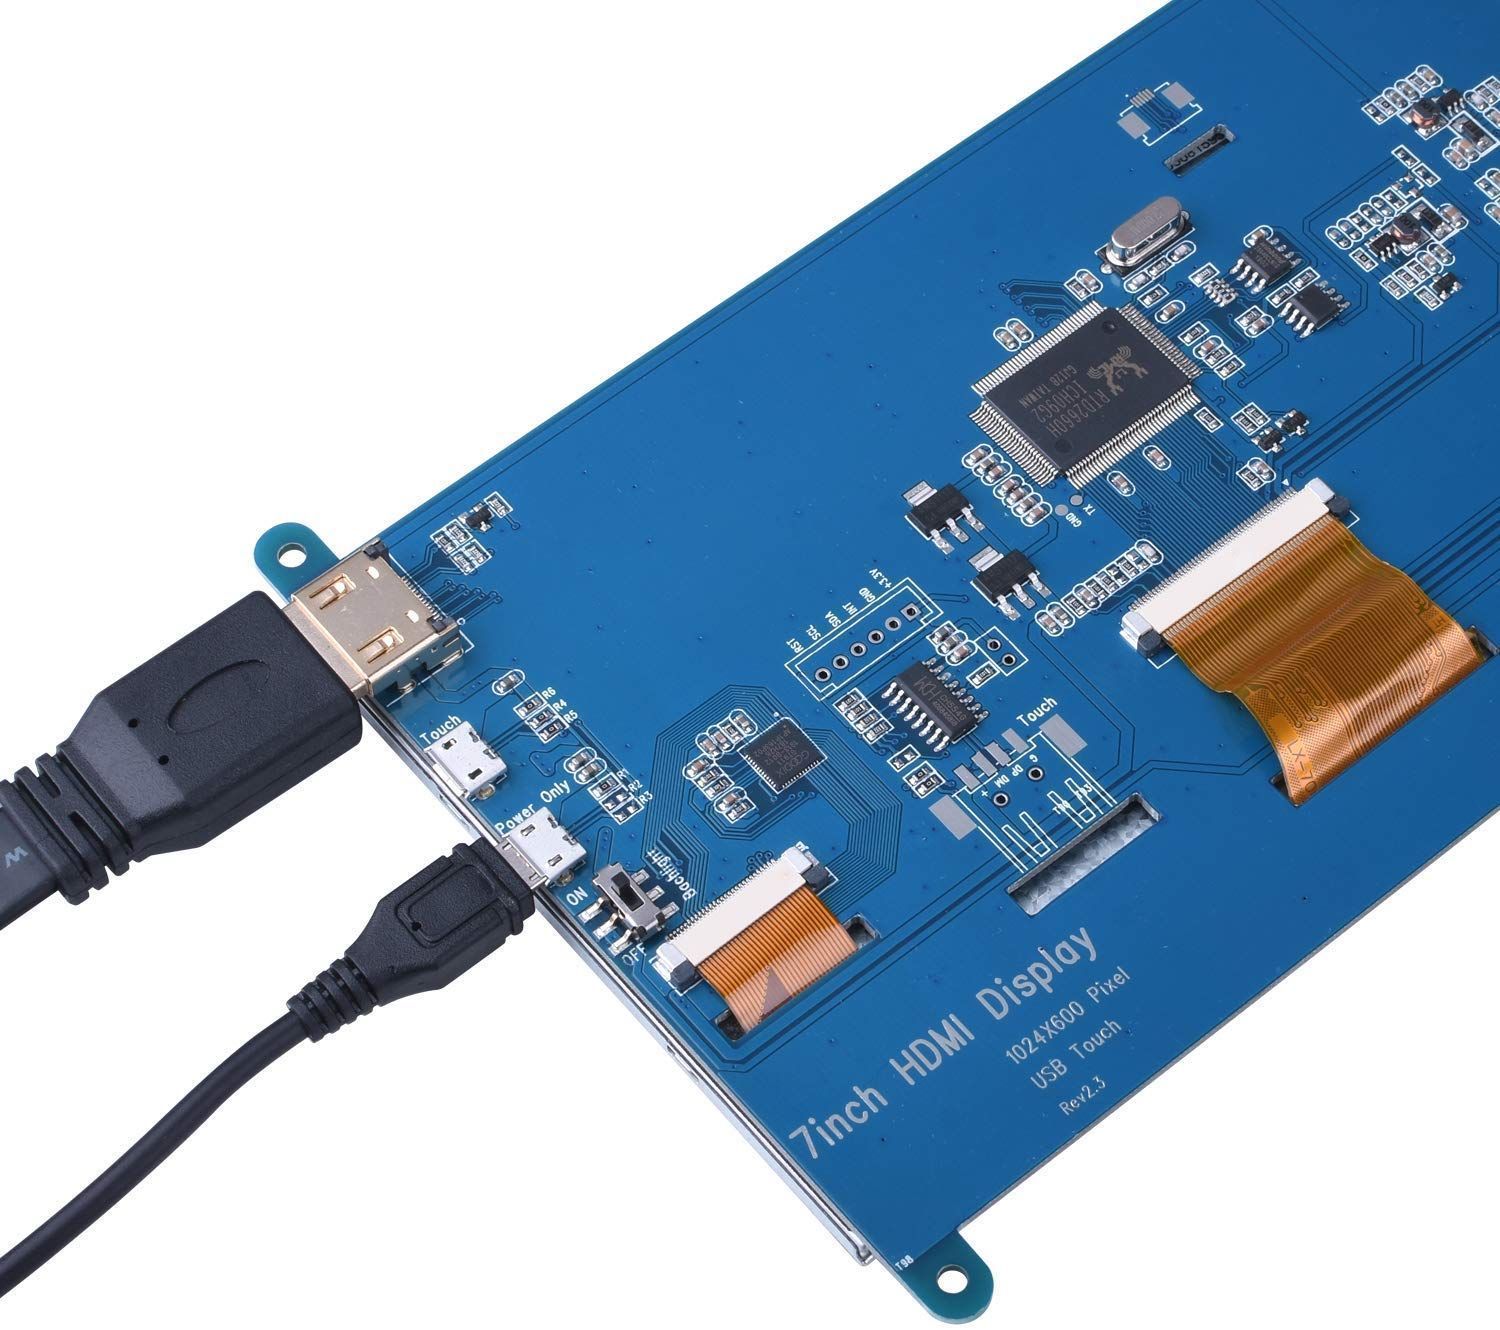 ｢IPS 全視角タッチモニター｣ 7インチ HDMI ラズパイ 液晶モニター 解